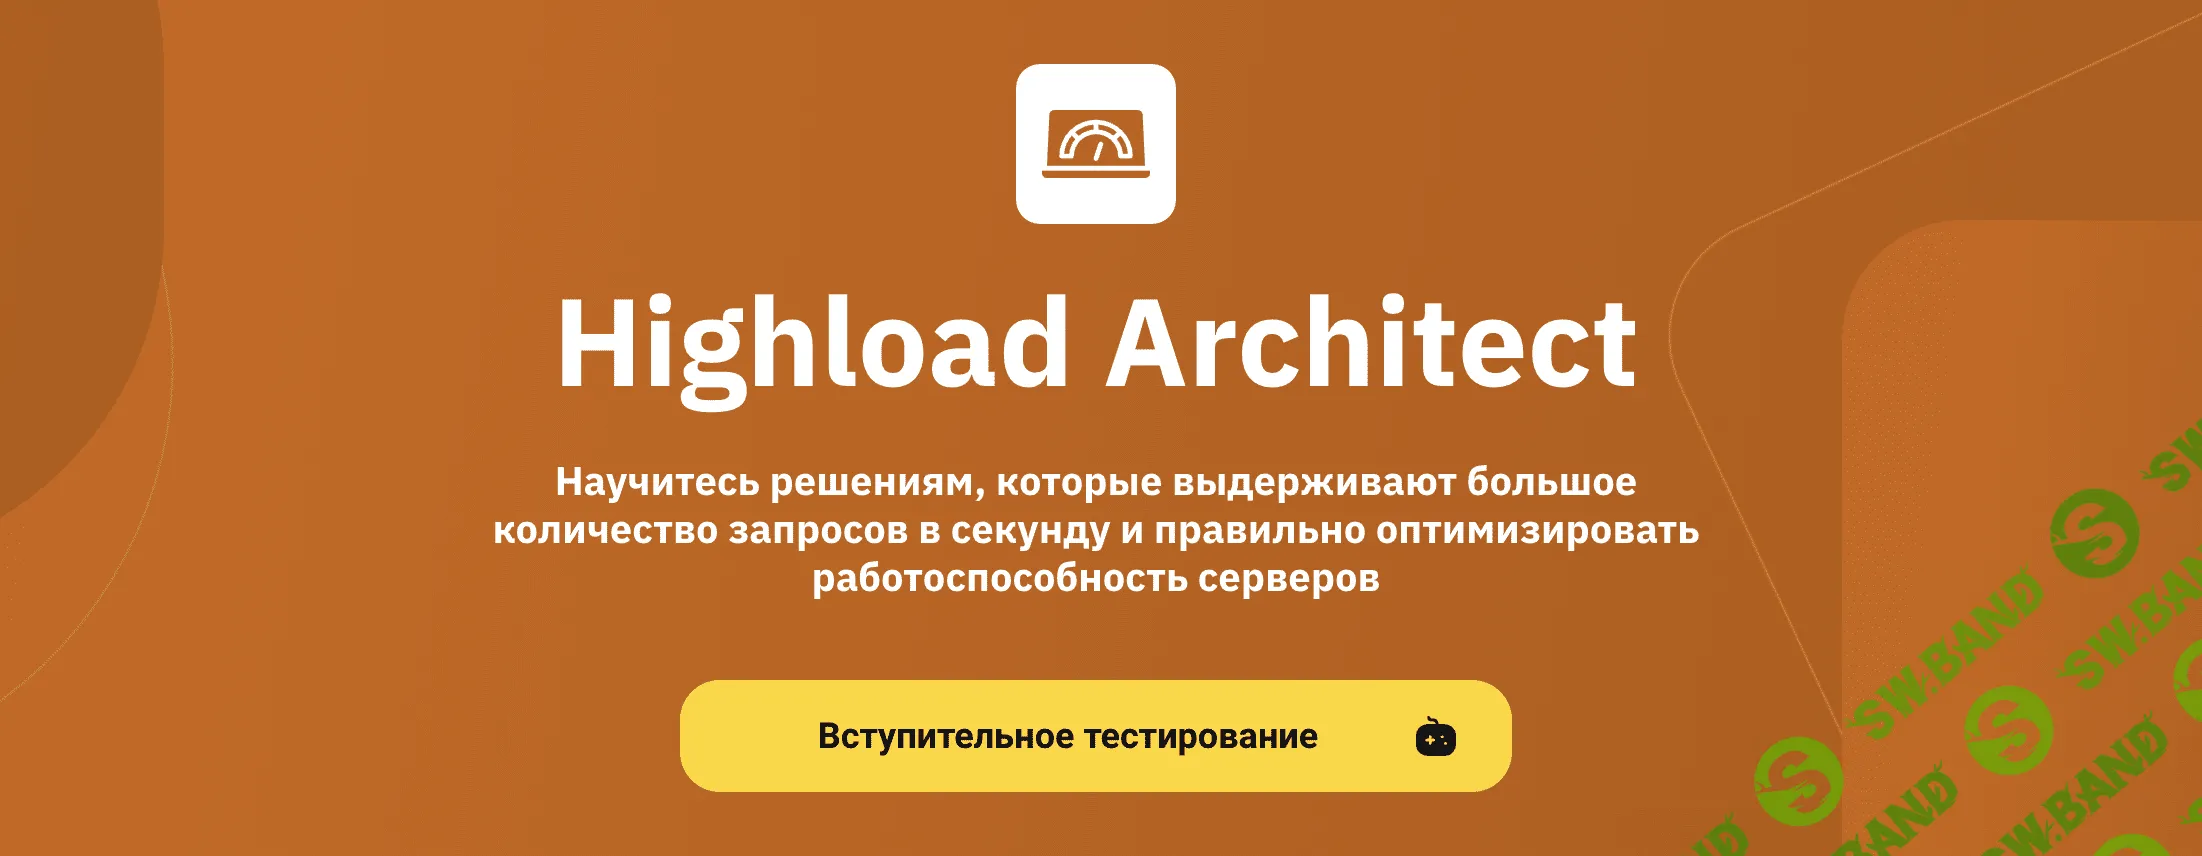 [OTUS] Highload Architect